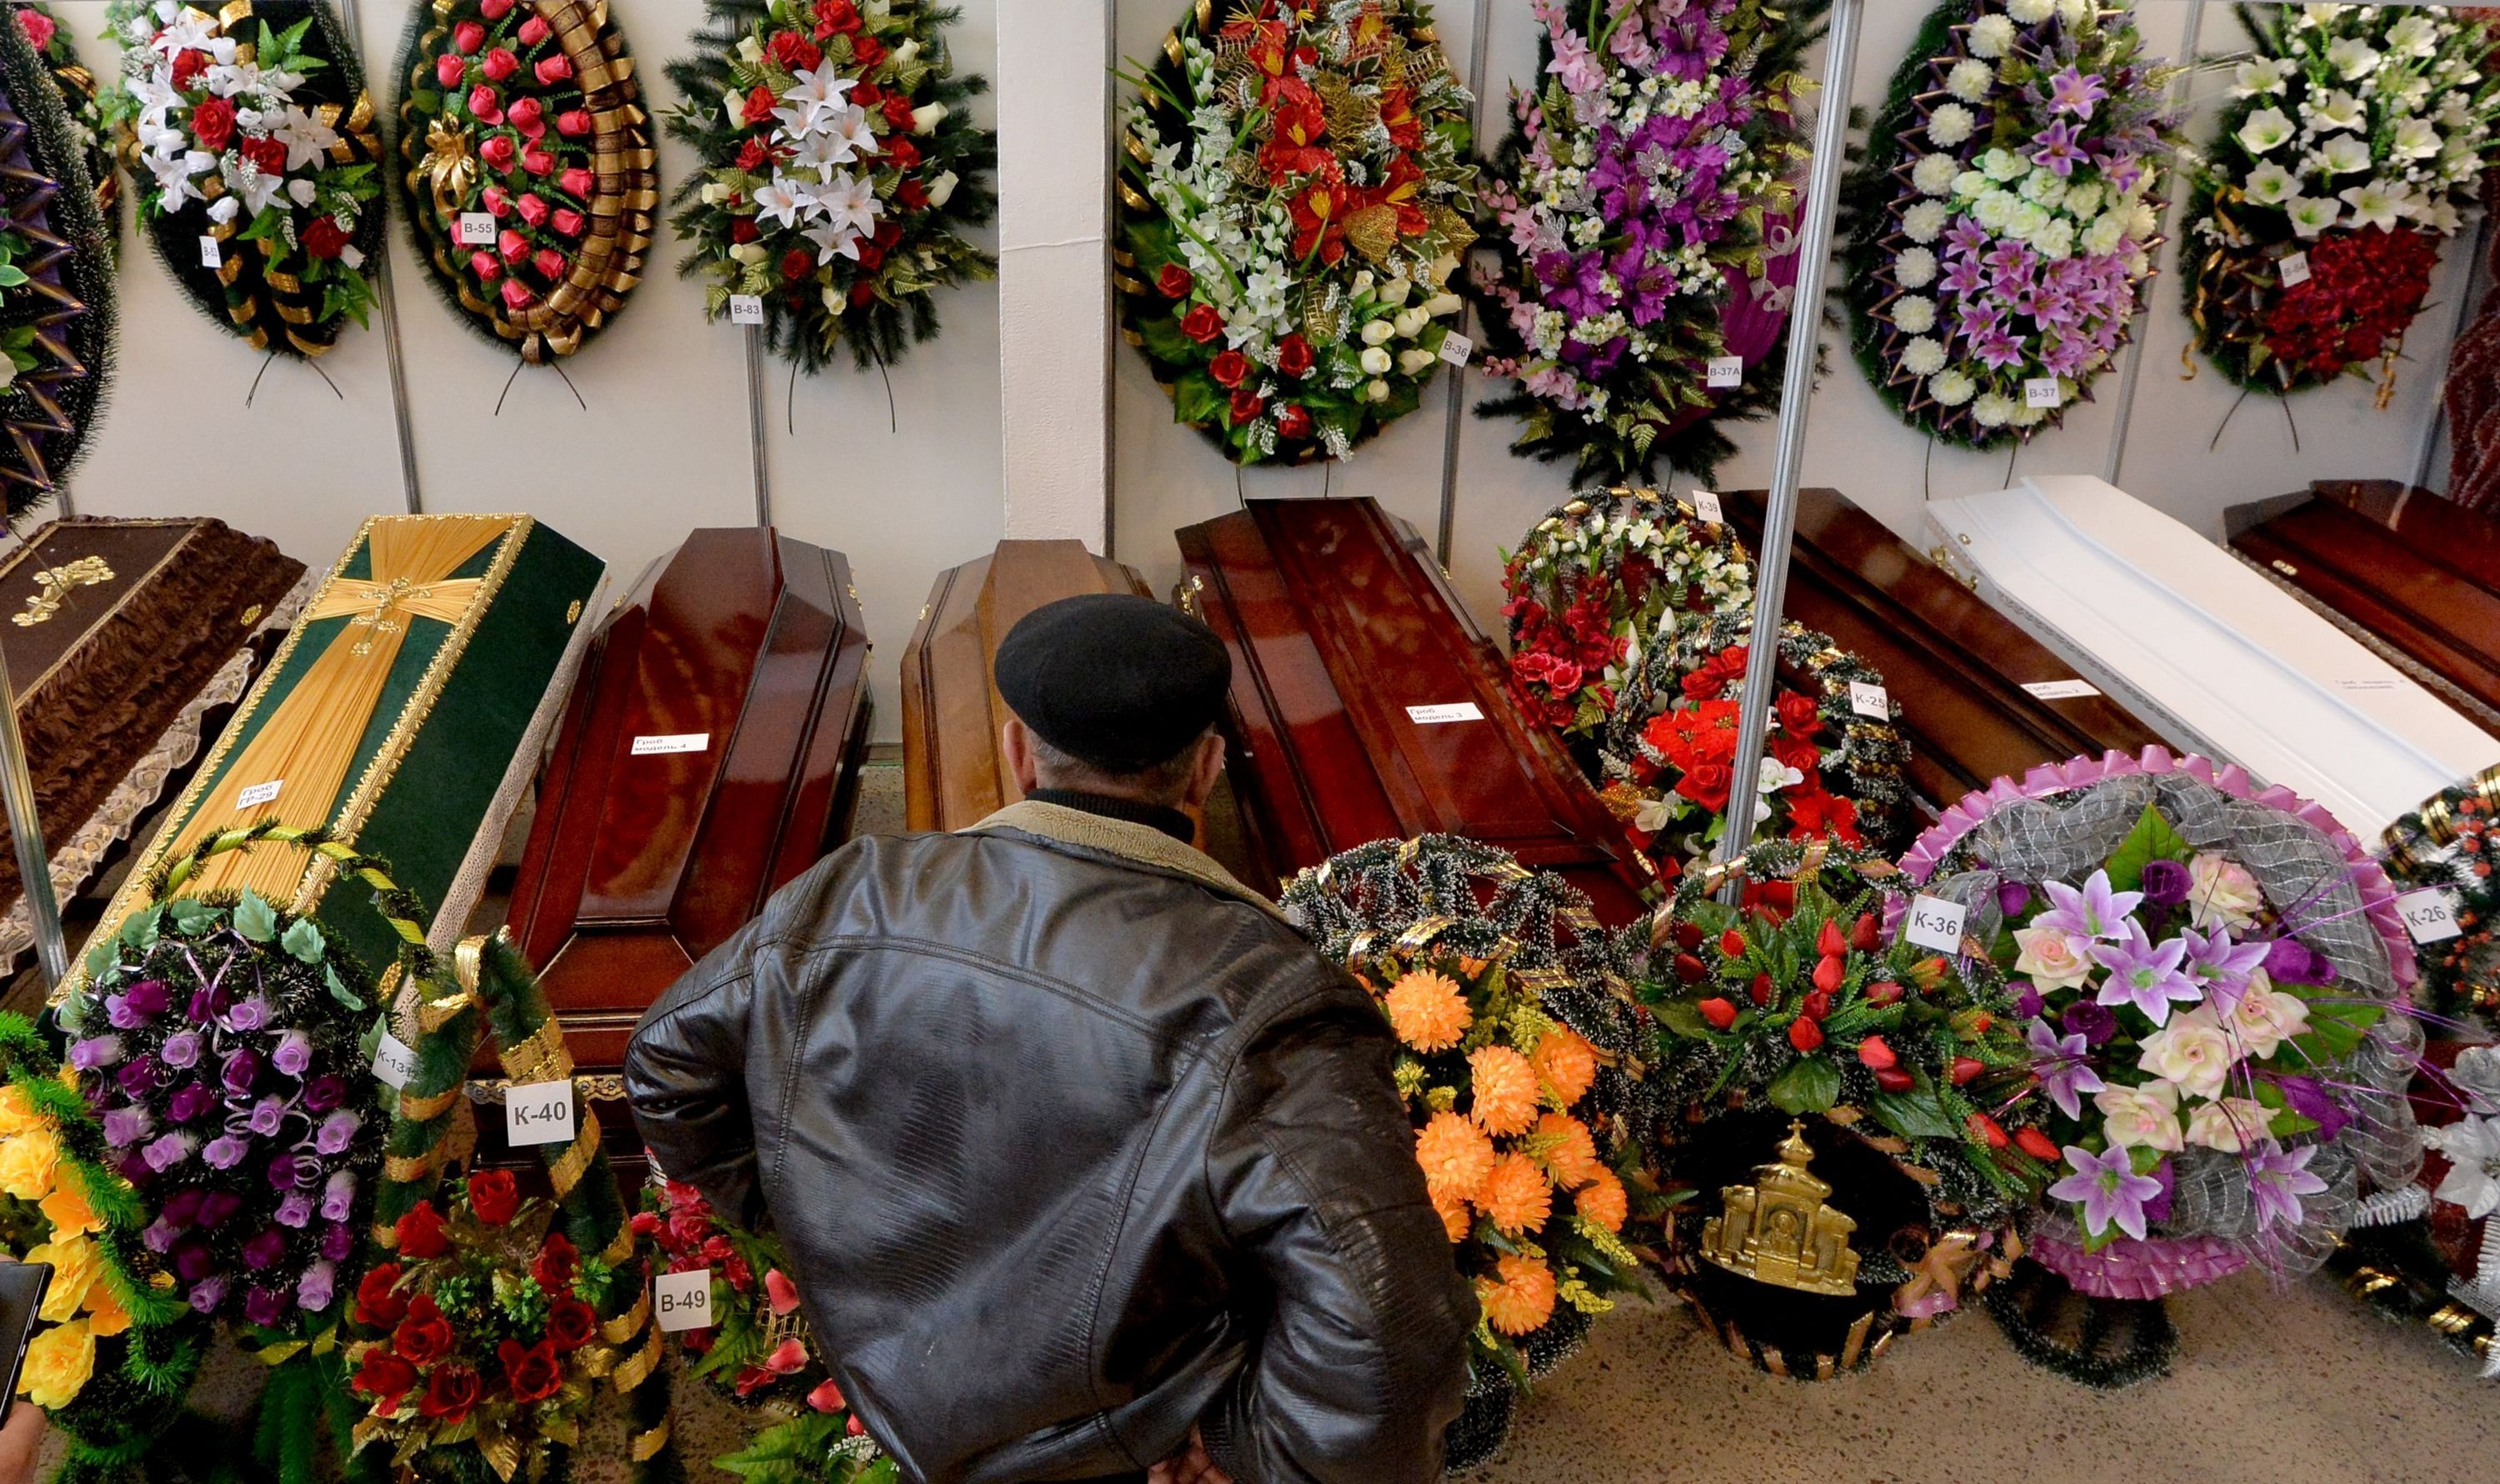 Белорусы в силу традиций предпочитают захоронение в землю в гроб другим видам погребений